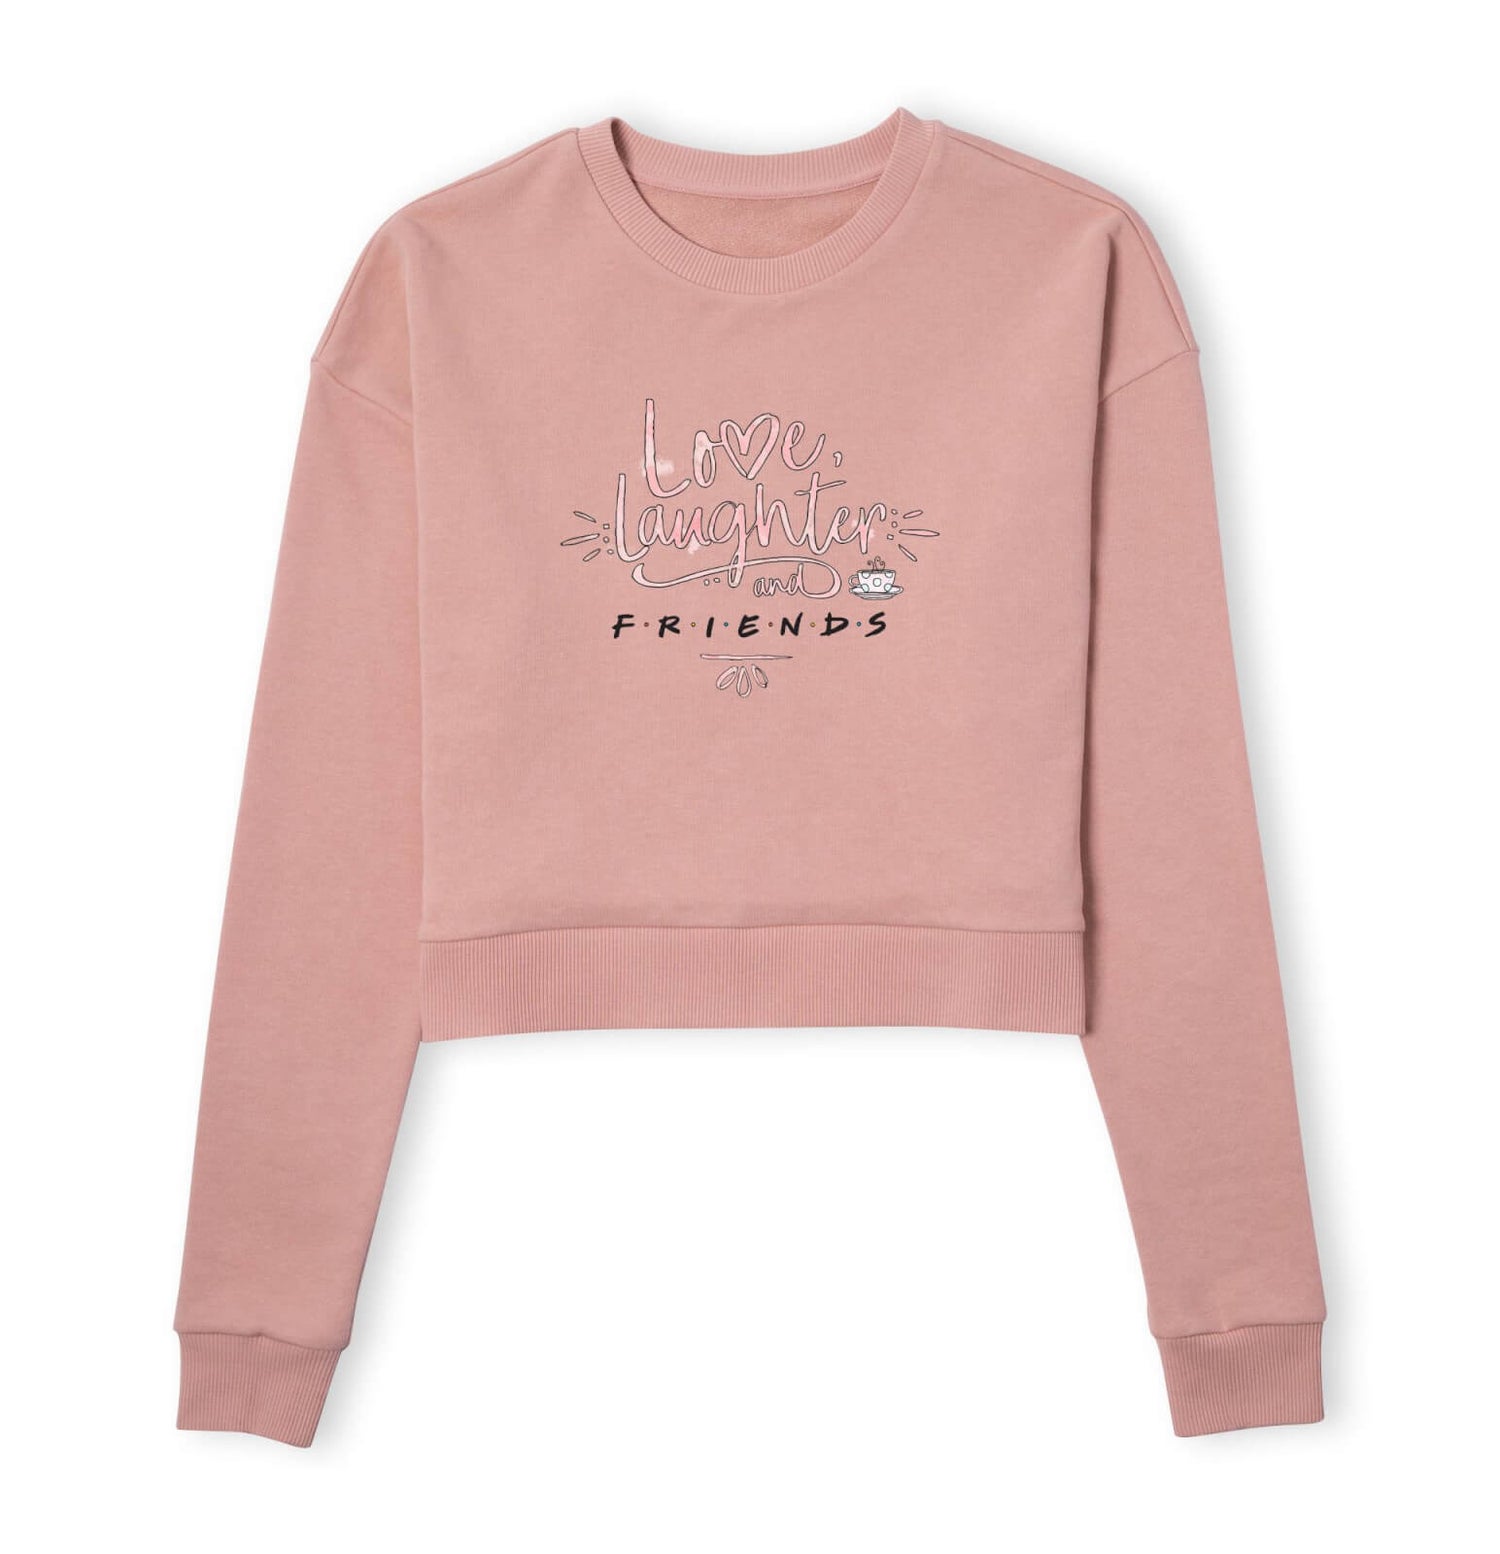 Friends Love Laughter Women's Cropped Sweatshirt - Dusty Pink